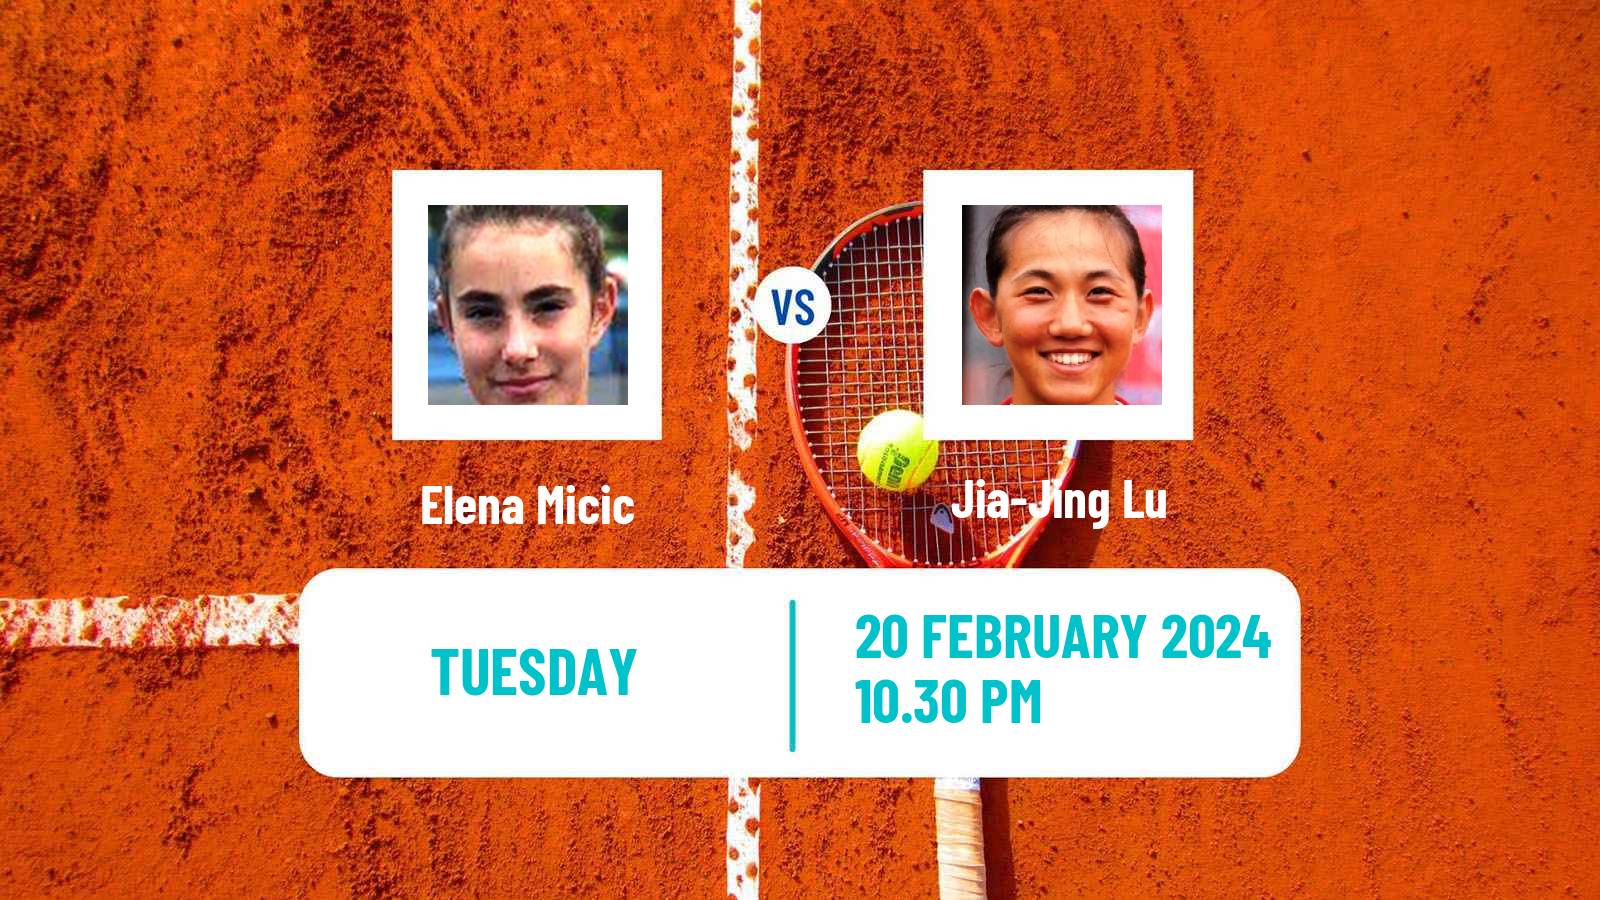 Tennis ITF W35 Traralgon Women Elena Micic - Jia-Jing Lu